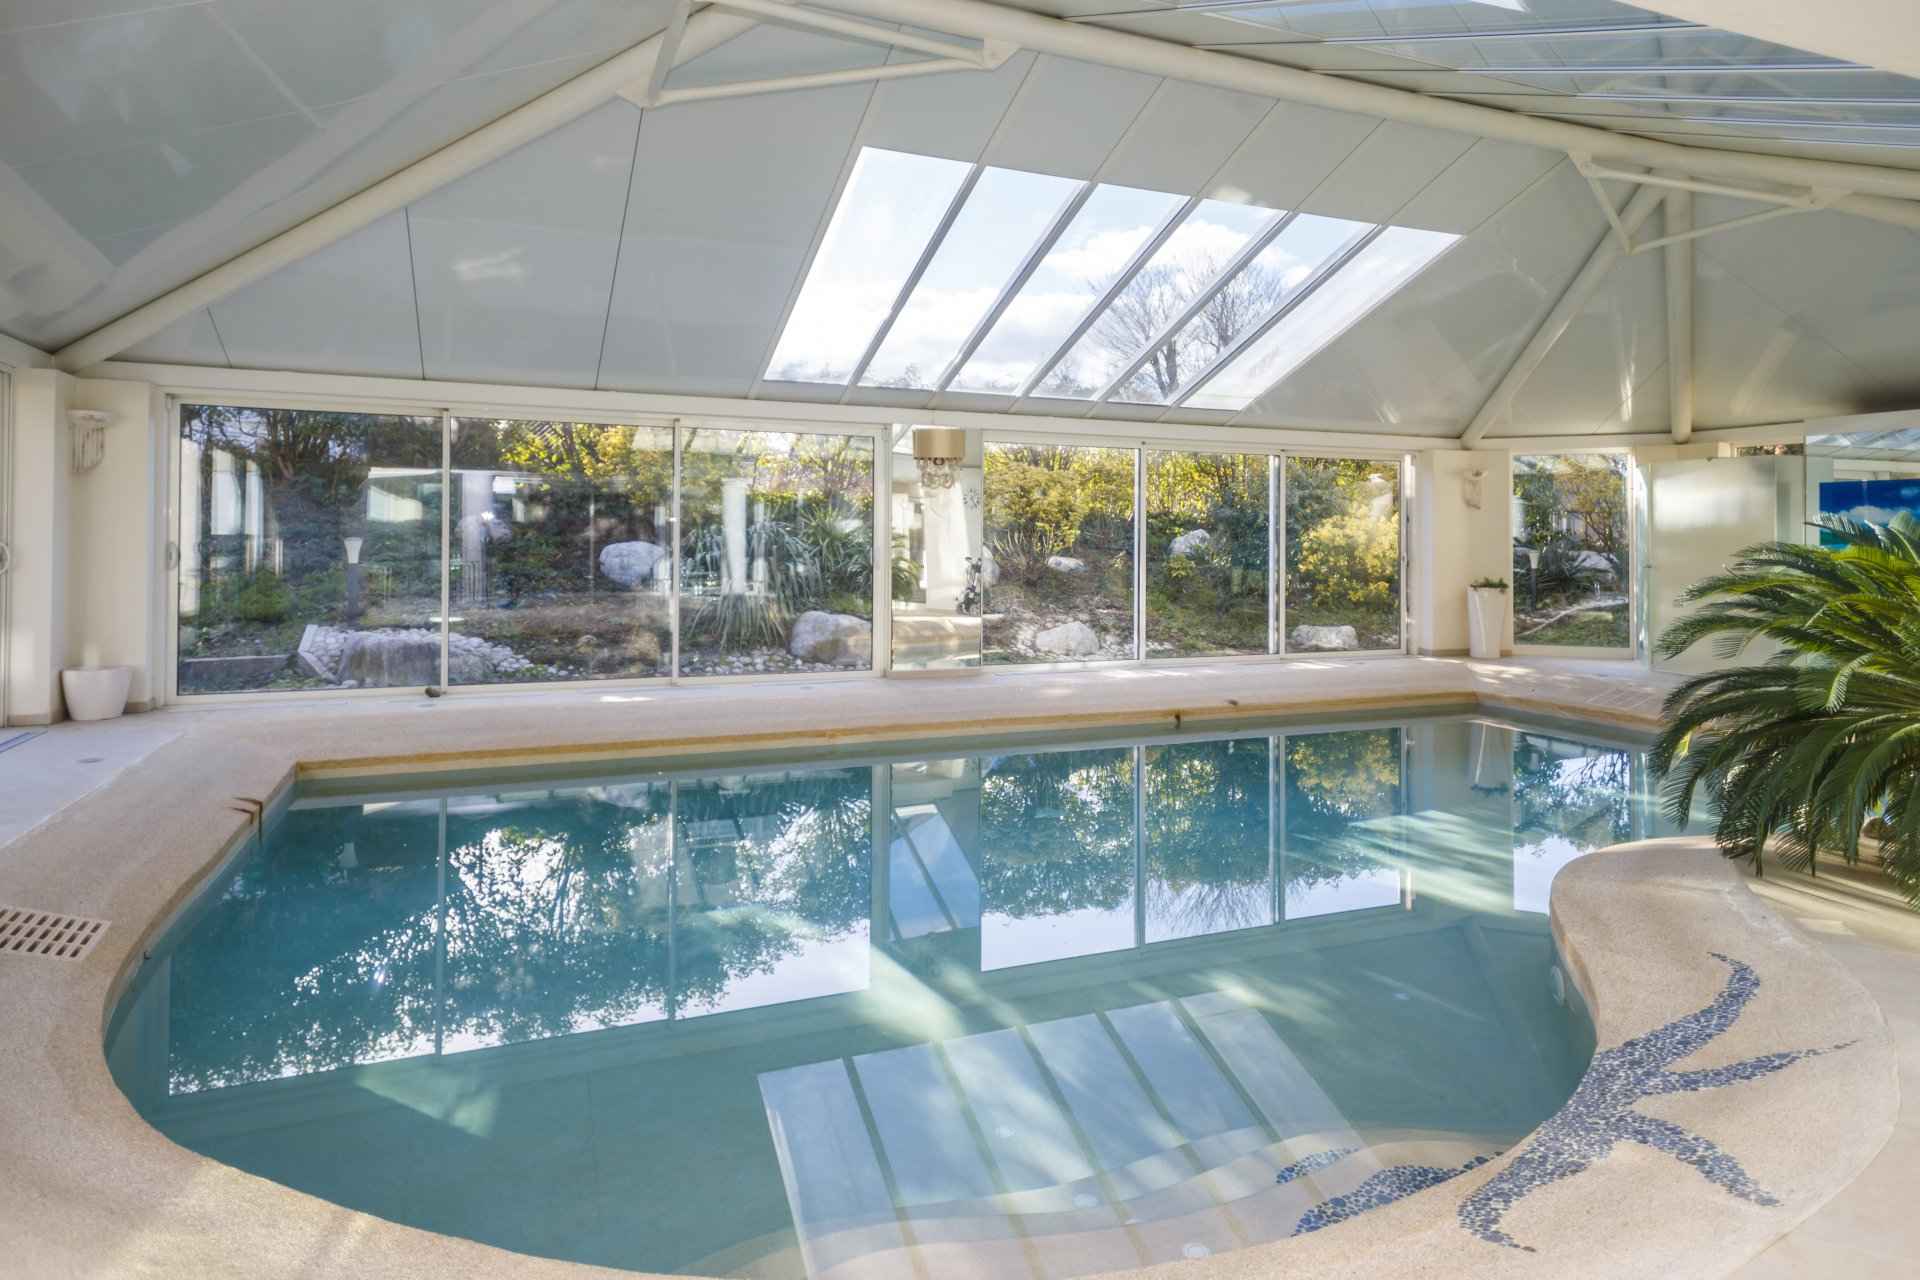 Maison / Villa - Barnes Léman, agence immobilière de prestige, piscine couverte